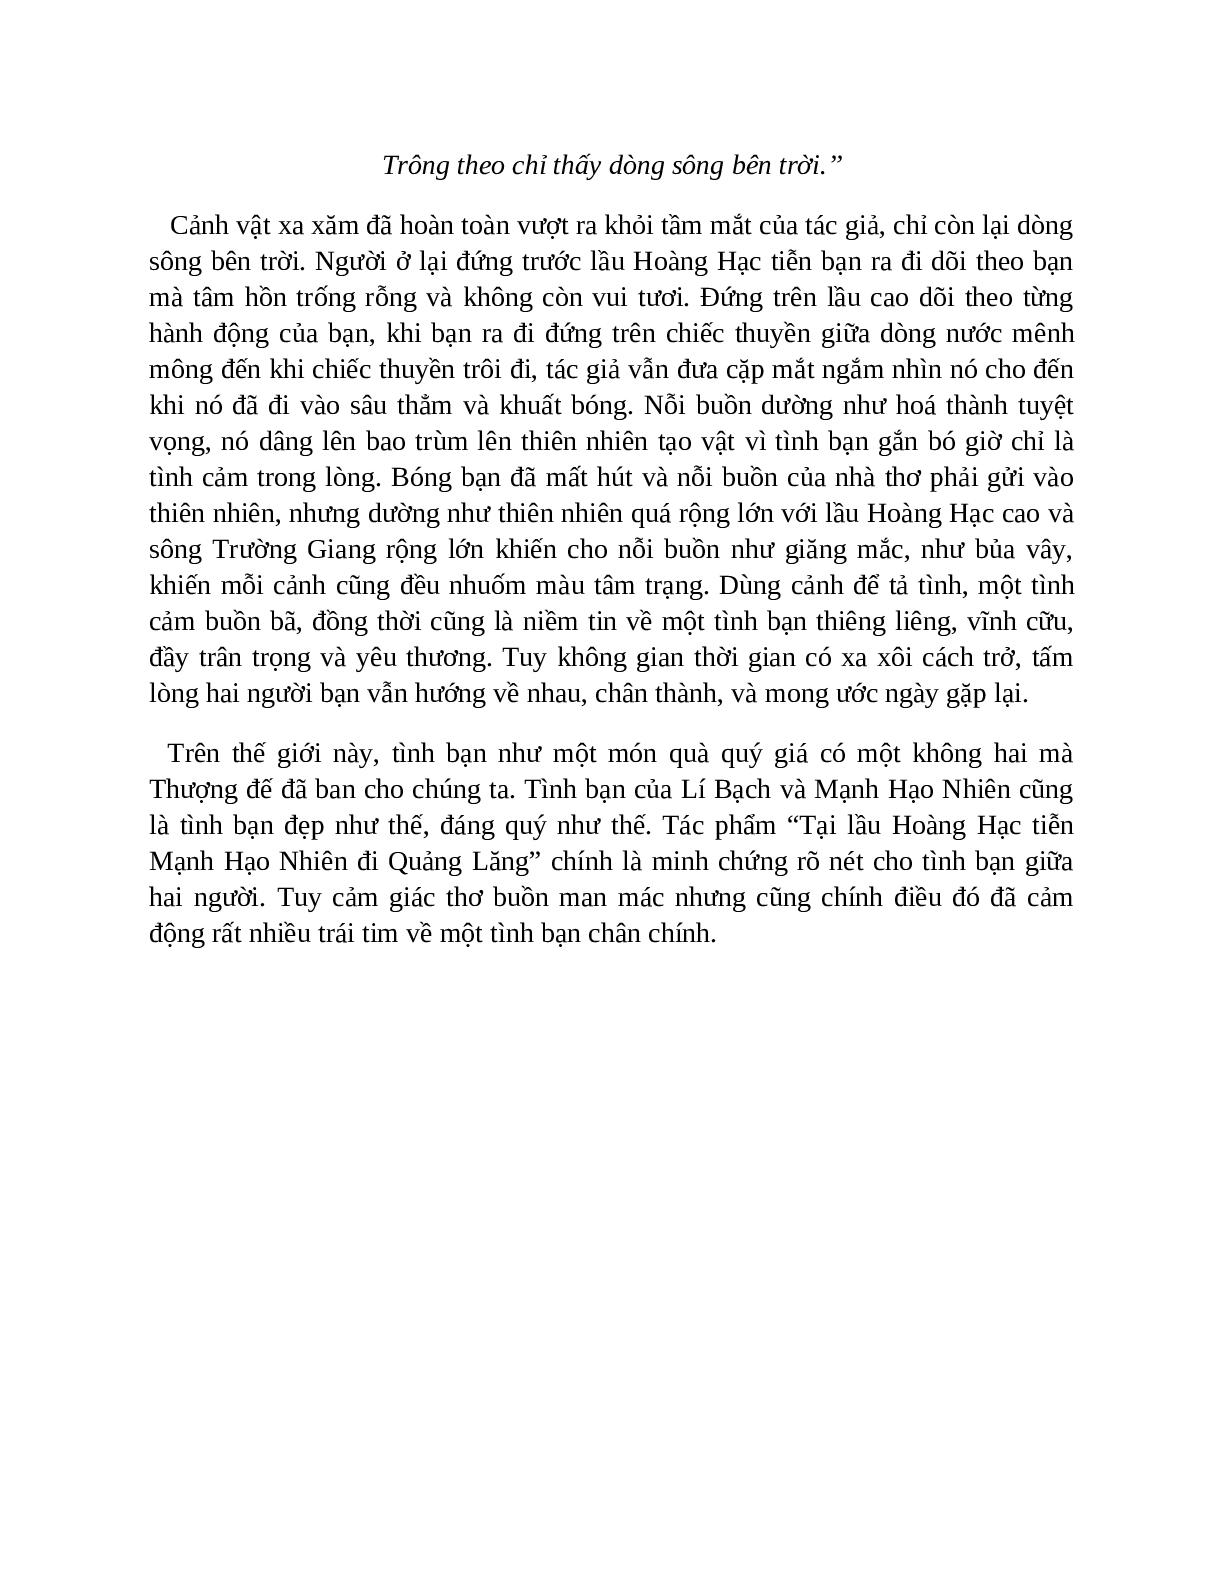 Sơ đồ tư duy bài Tại lầu Hoàng Hạc tiễn Mạnh Hạo Nhiên đi Quảng Lăng dễ nhớ, ngắn nhất - Ngữ văn lớp 10 (trang 8)